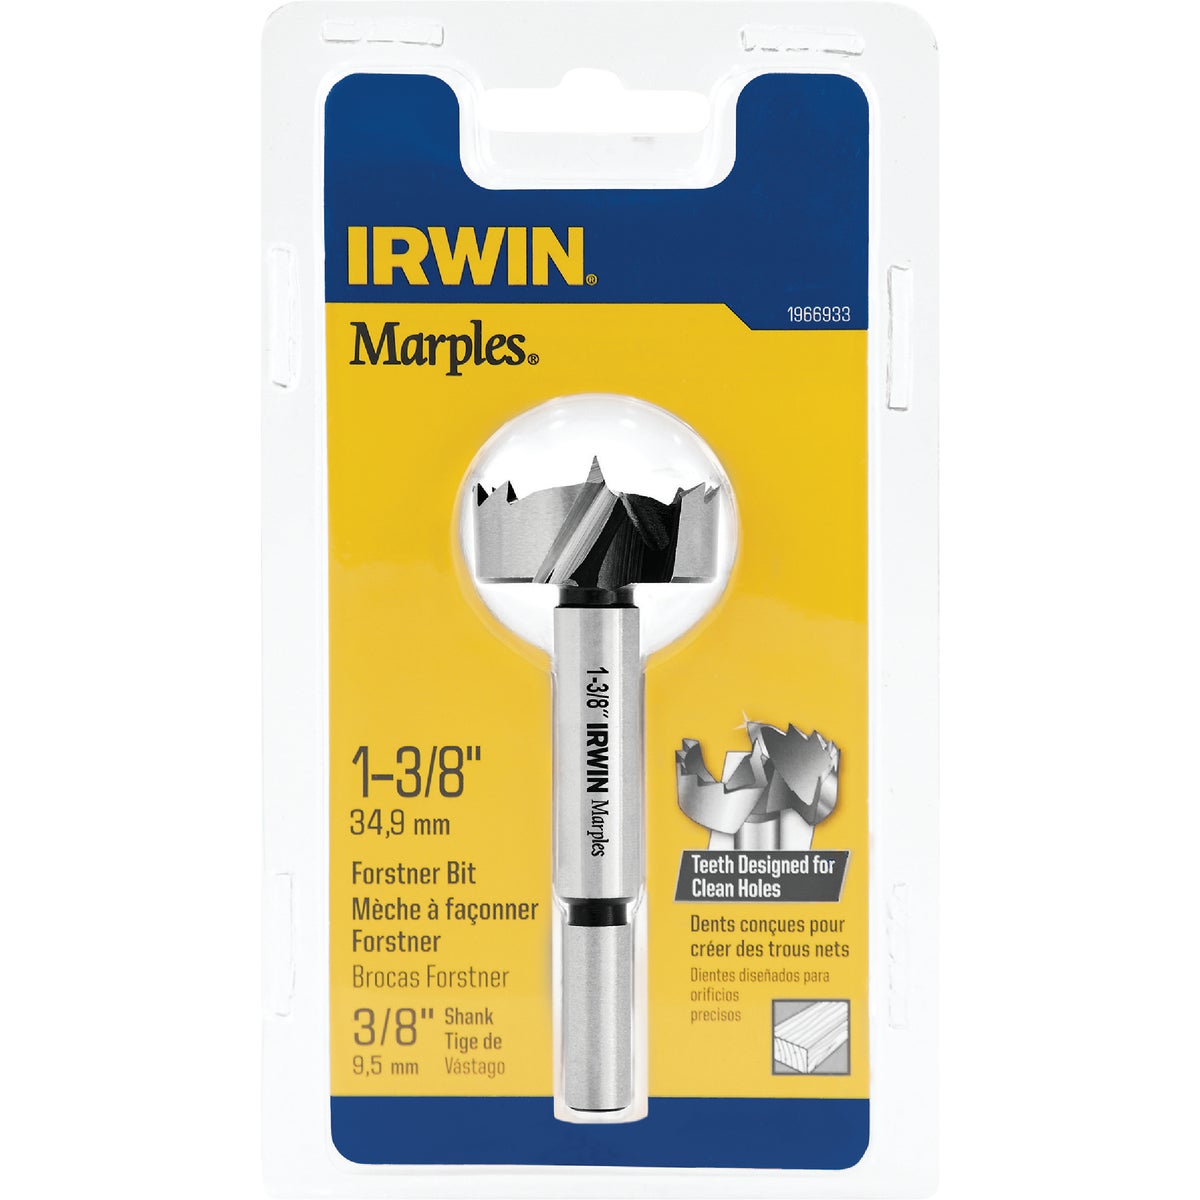 Irwin Marples 1-3/8 In. x 3-1/2 In. Reduced Forstner Drill Bit